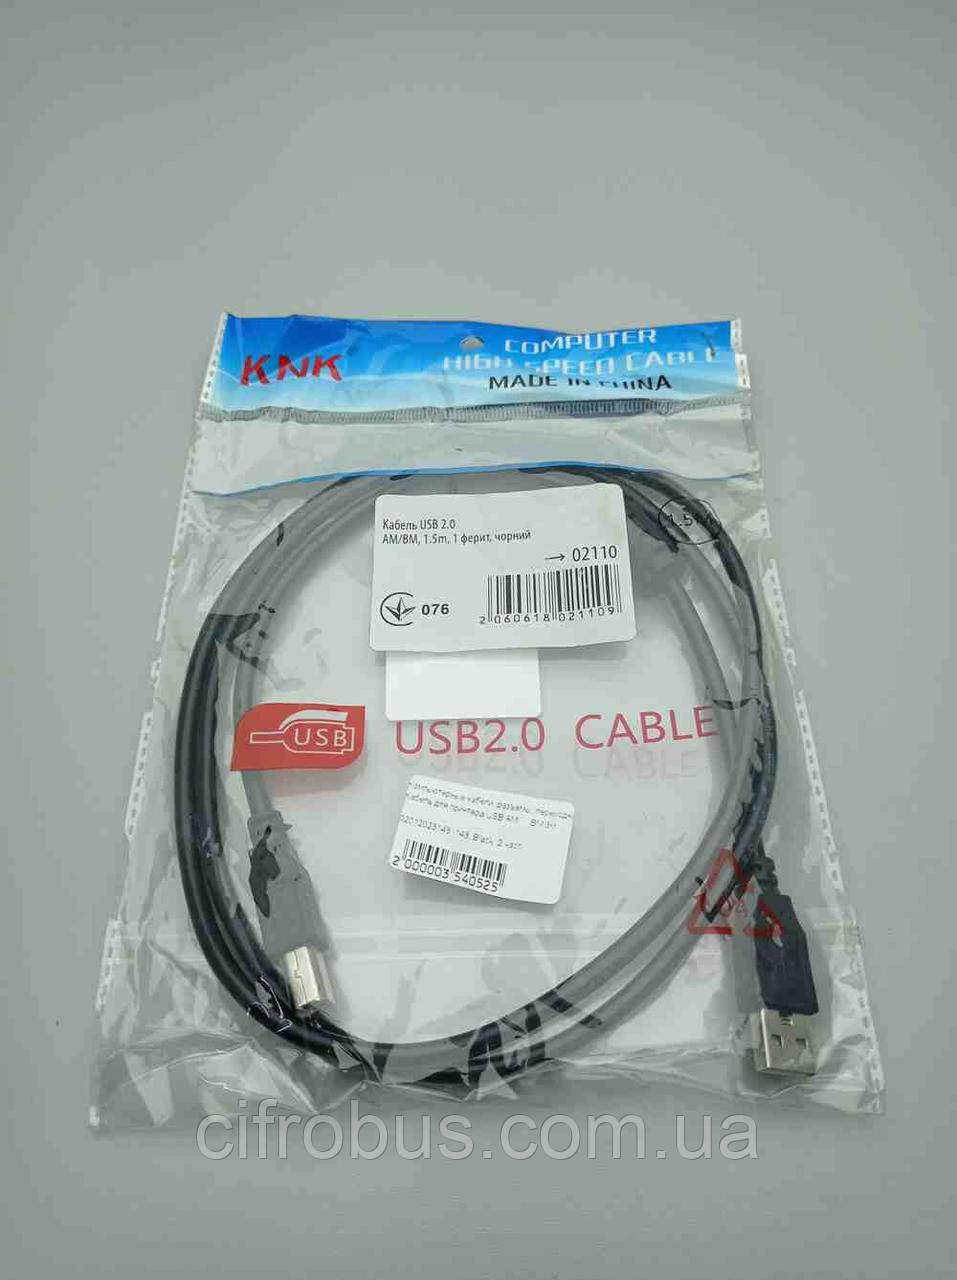 Комп'ютерні кабелі, роз'єми, перехідники Б/К Кабель для принтера USB AM — BM 3 м.